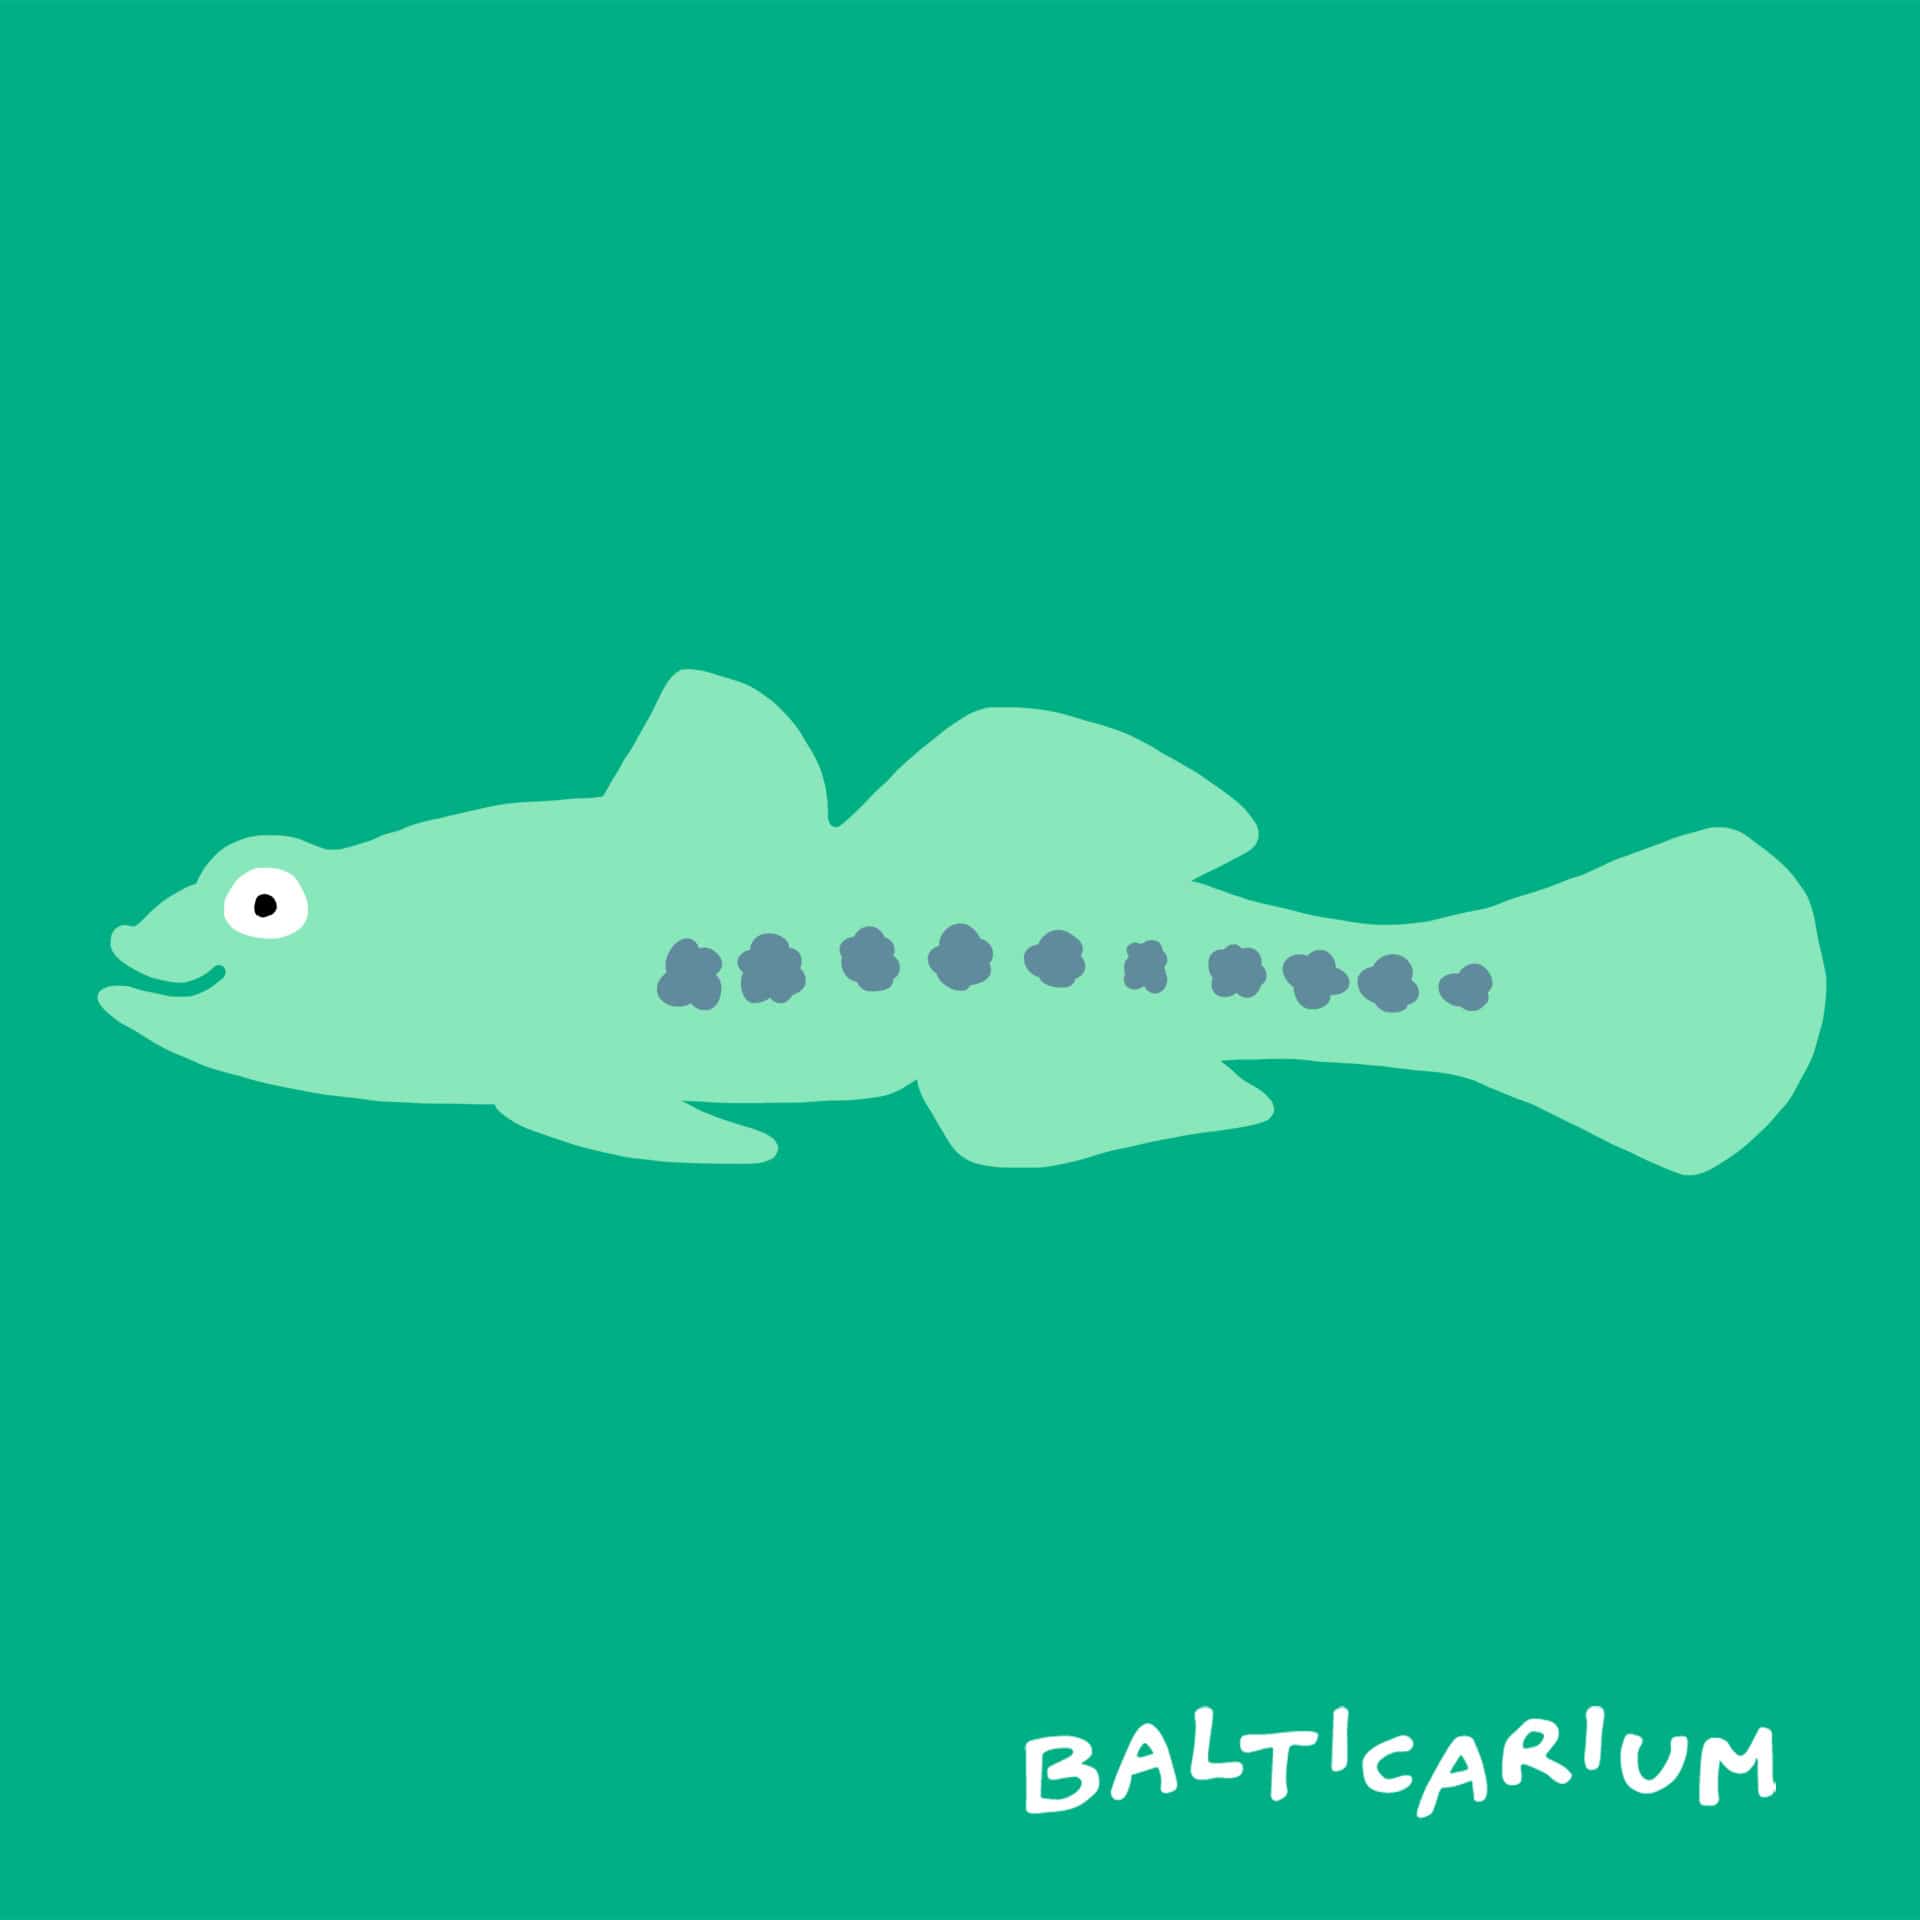 balticariium